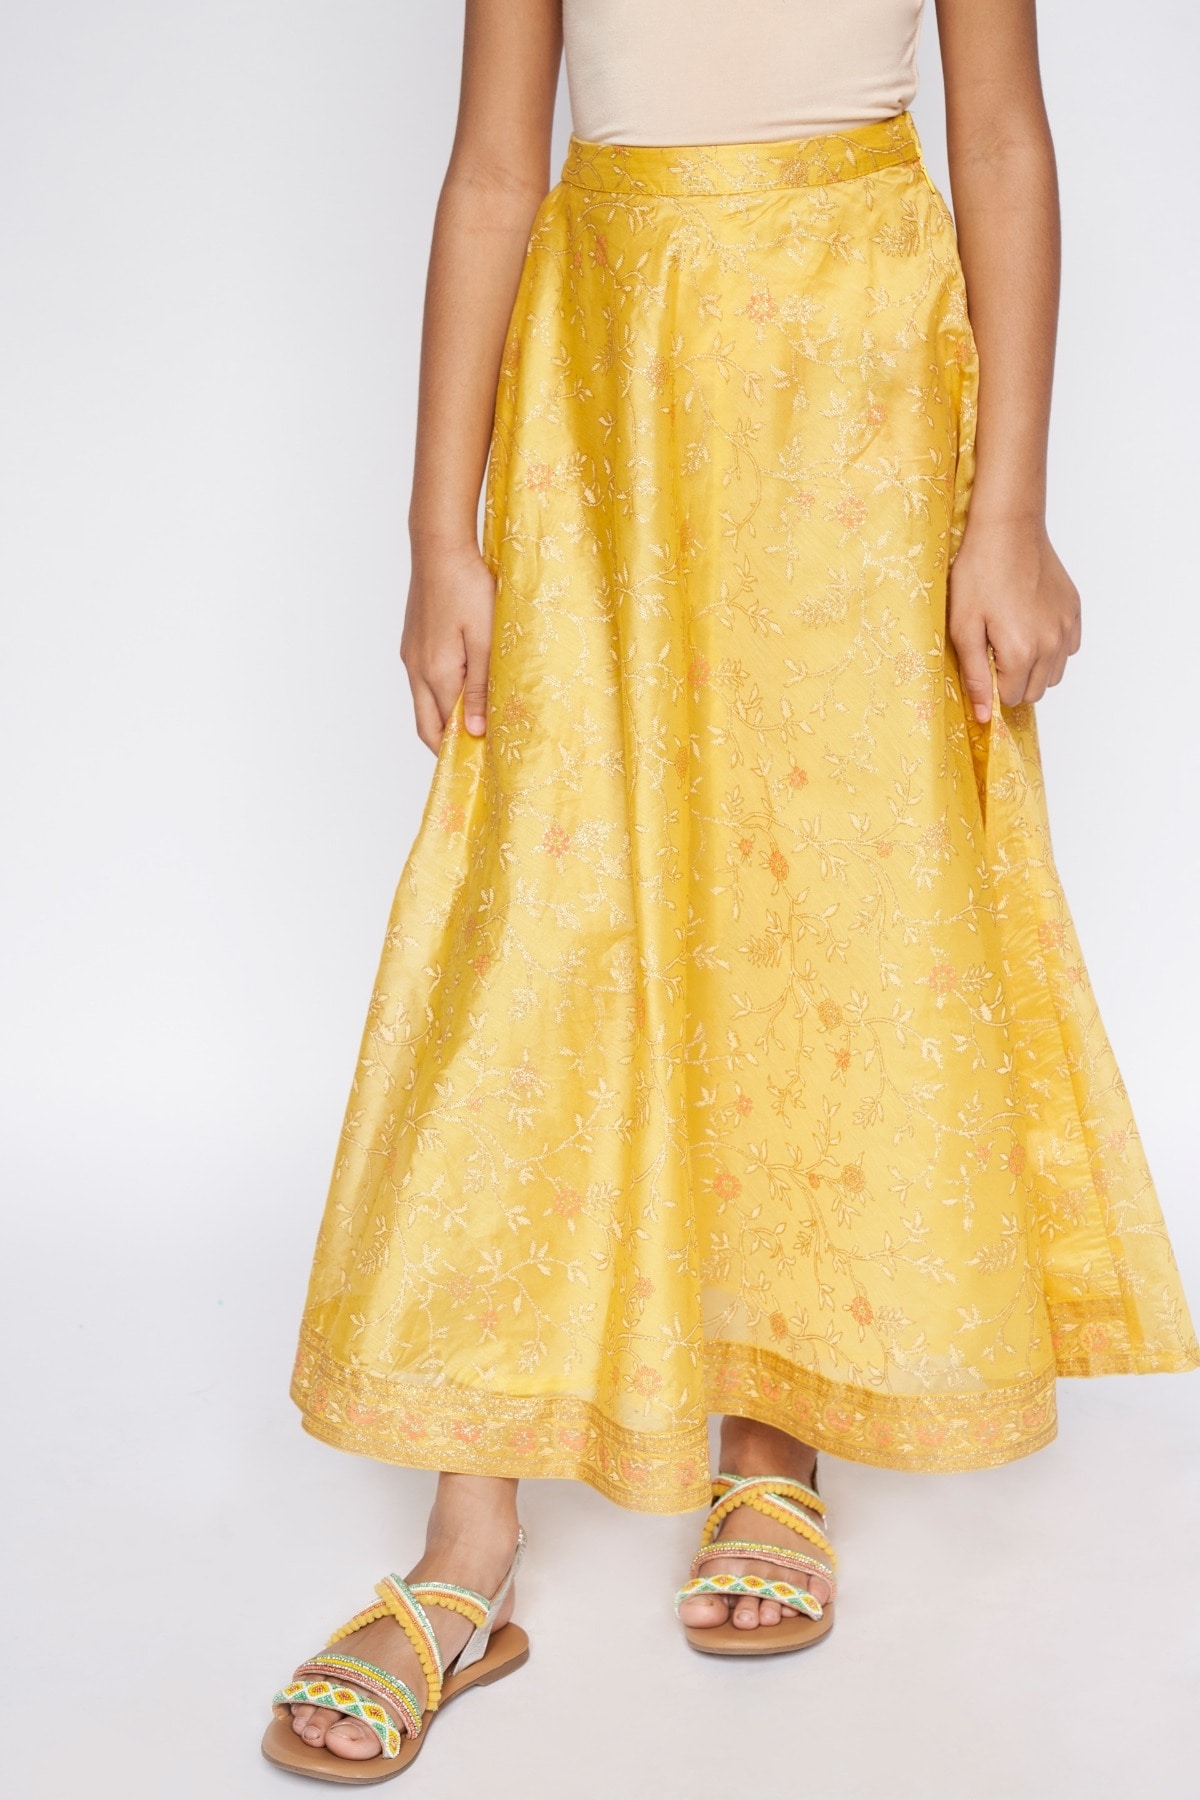 Global Desi | Global Desi Yellow Skirt 0